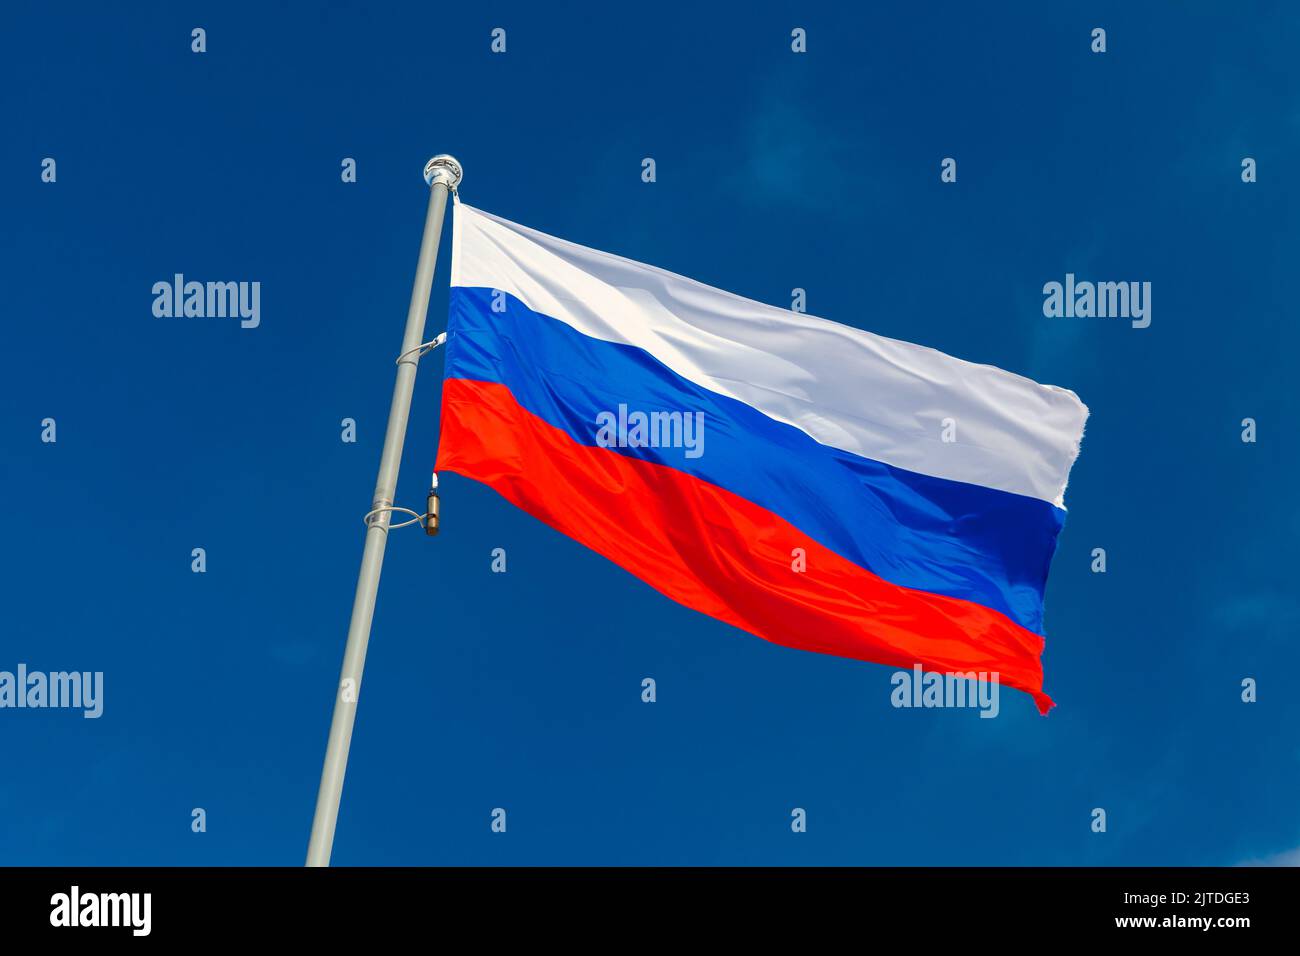 Le drapeau national de la Russie, le drapeau d'Etat de la Fédération de Russie est sur un mât sous le ciel bleu, par un jour ensoleillé Banque D'Images